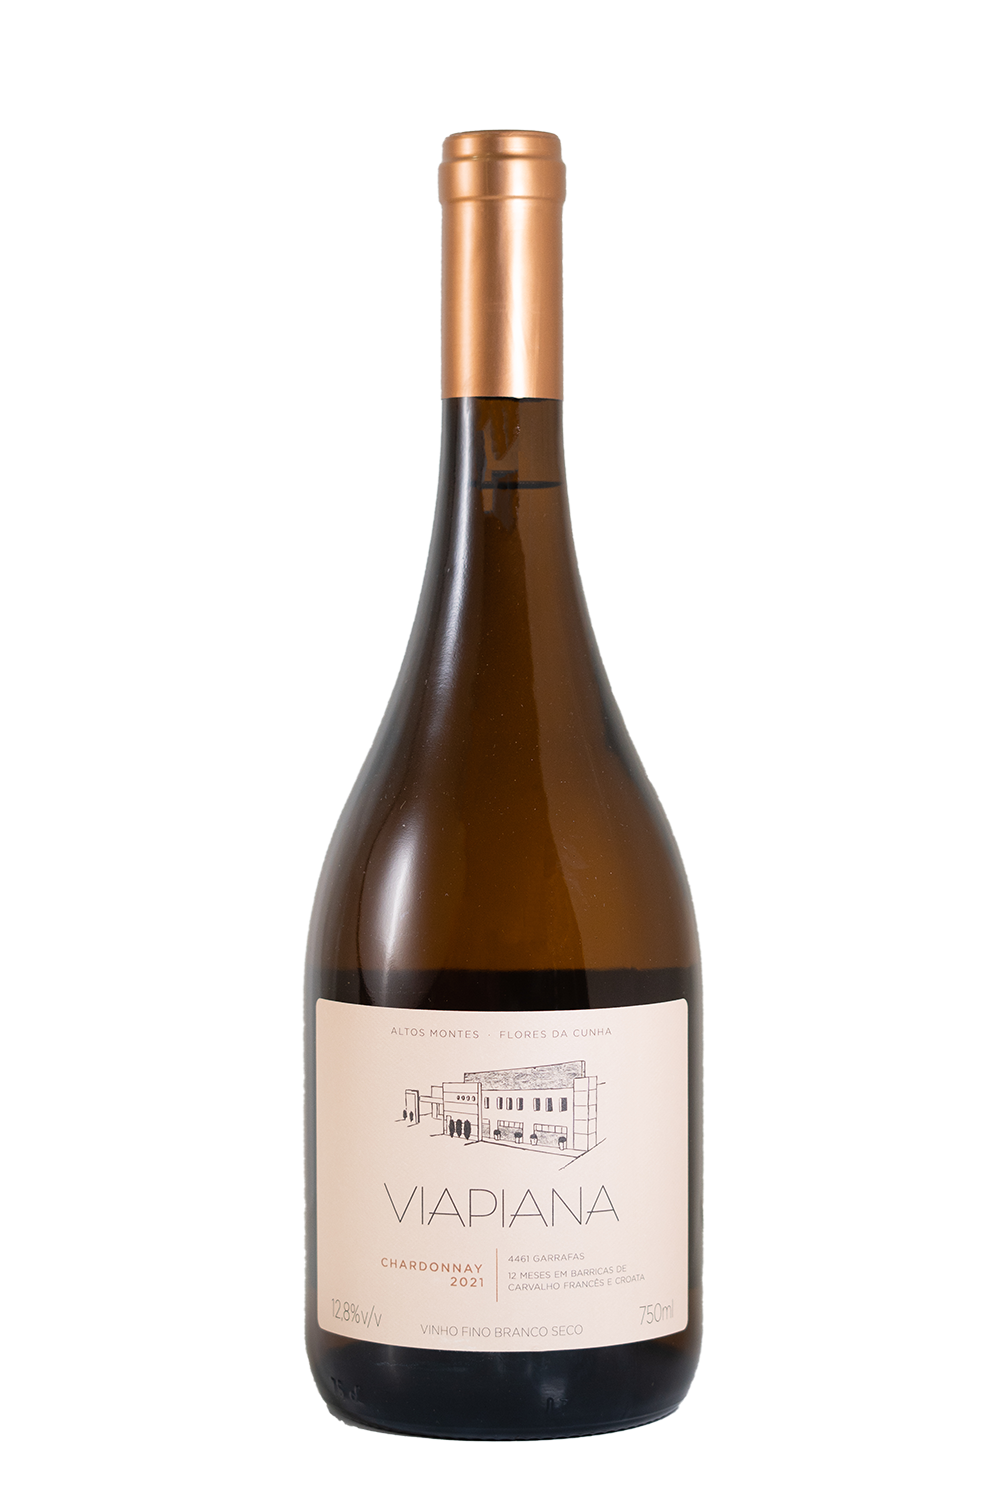 Viapiana Chardonnay 2021